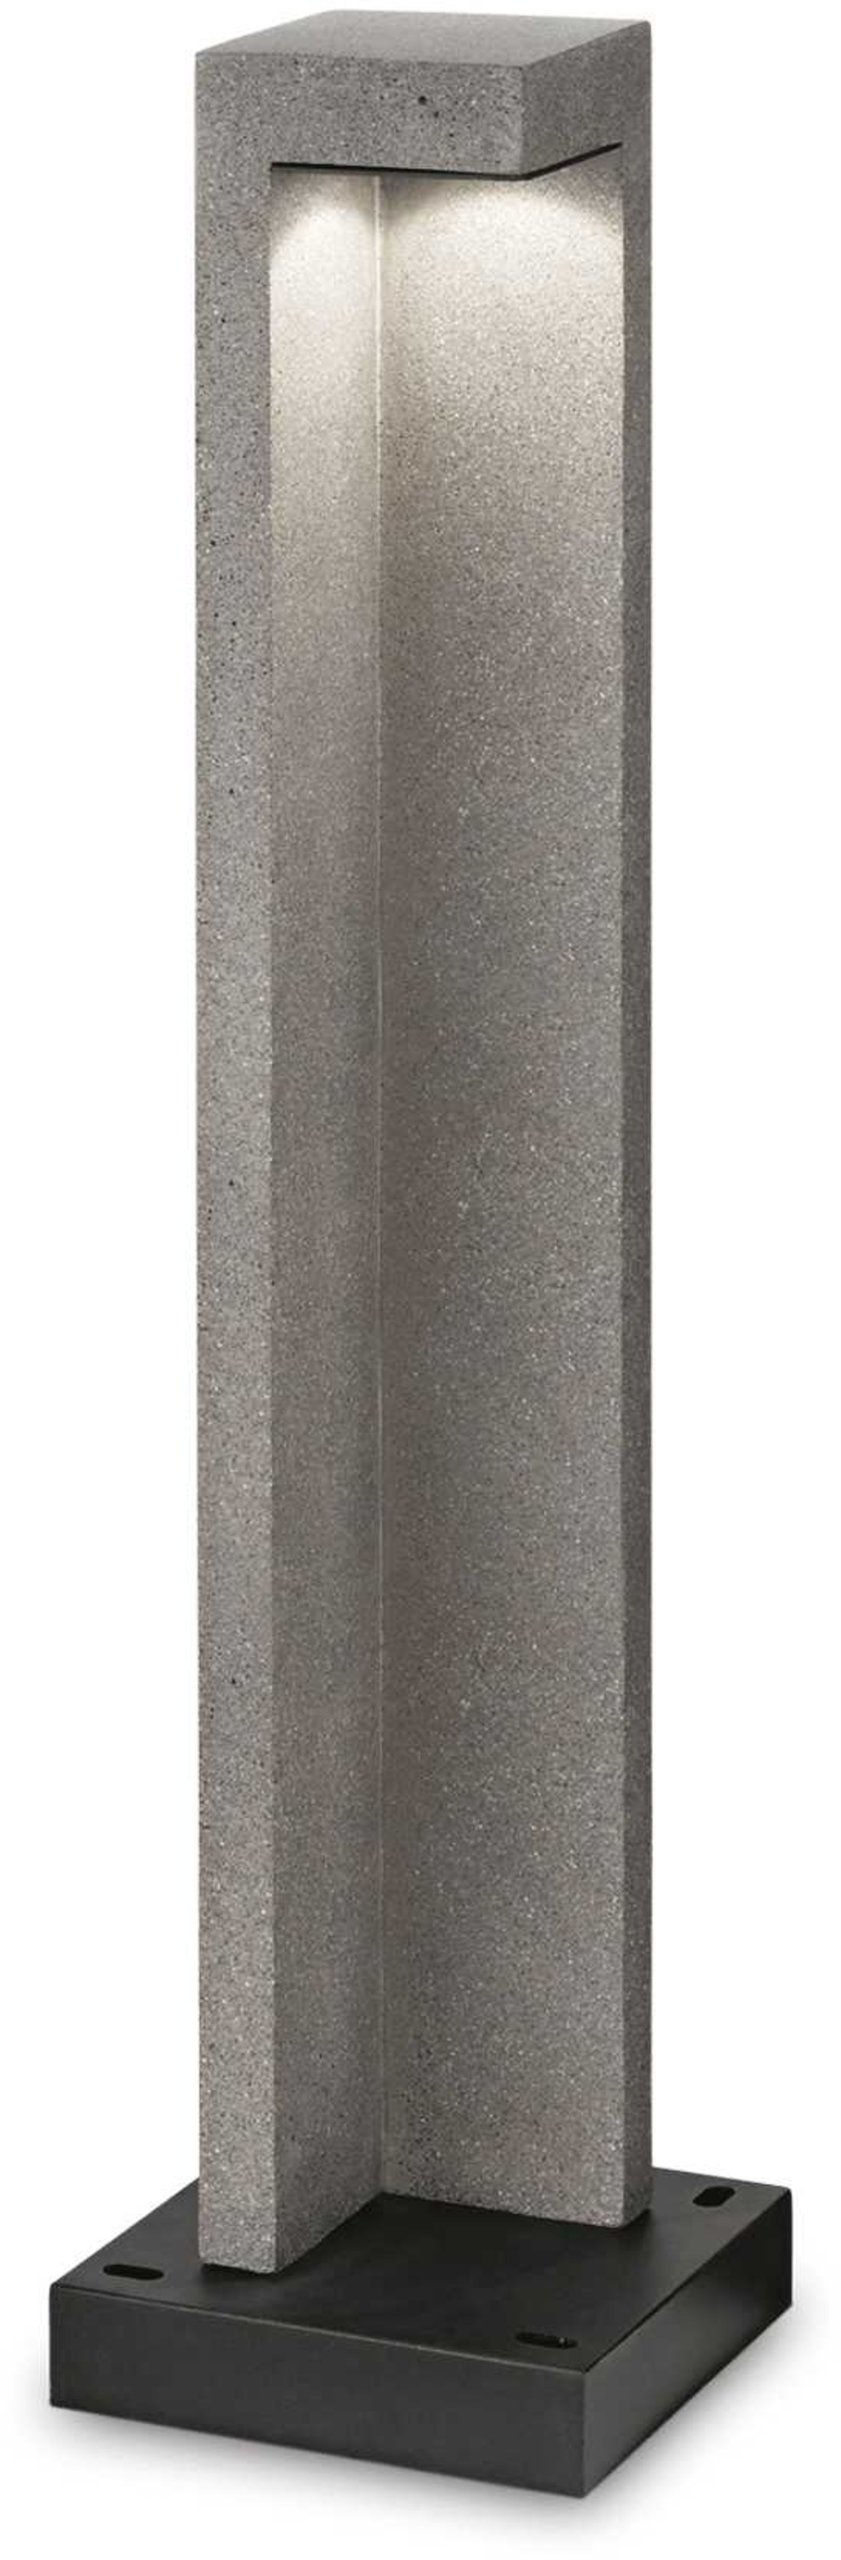 Billede af Titano, Udendørs gulvlampe, Pt, metal by Ideal Lux (H: 74 cm. x B: 18 cm. x L: 18 cm., Granit/Sort/3000 kelvin)